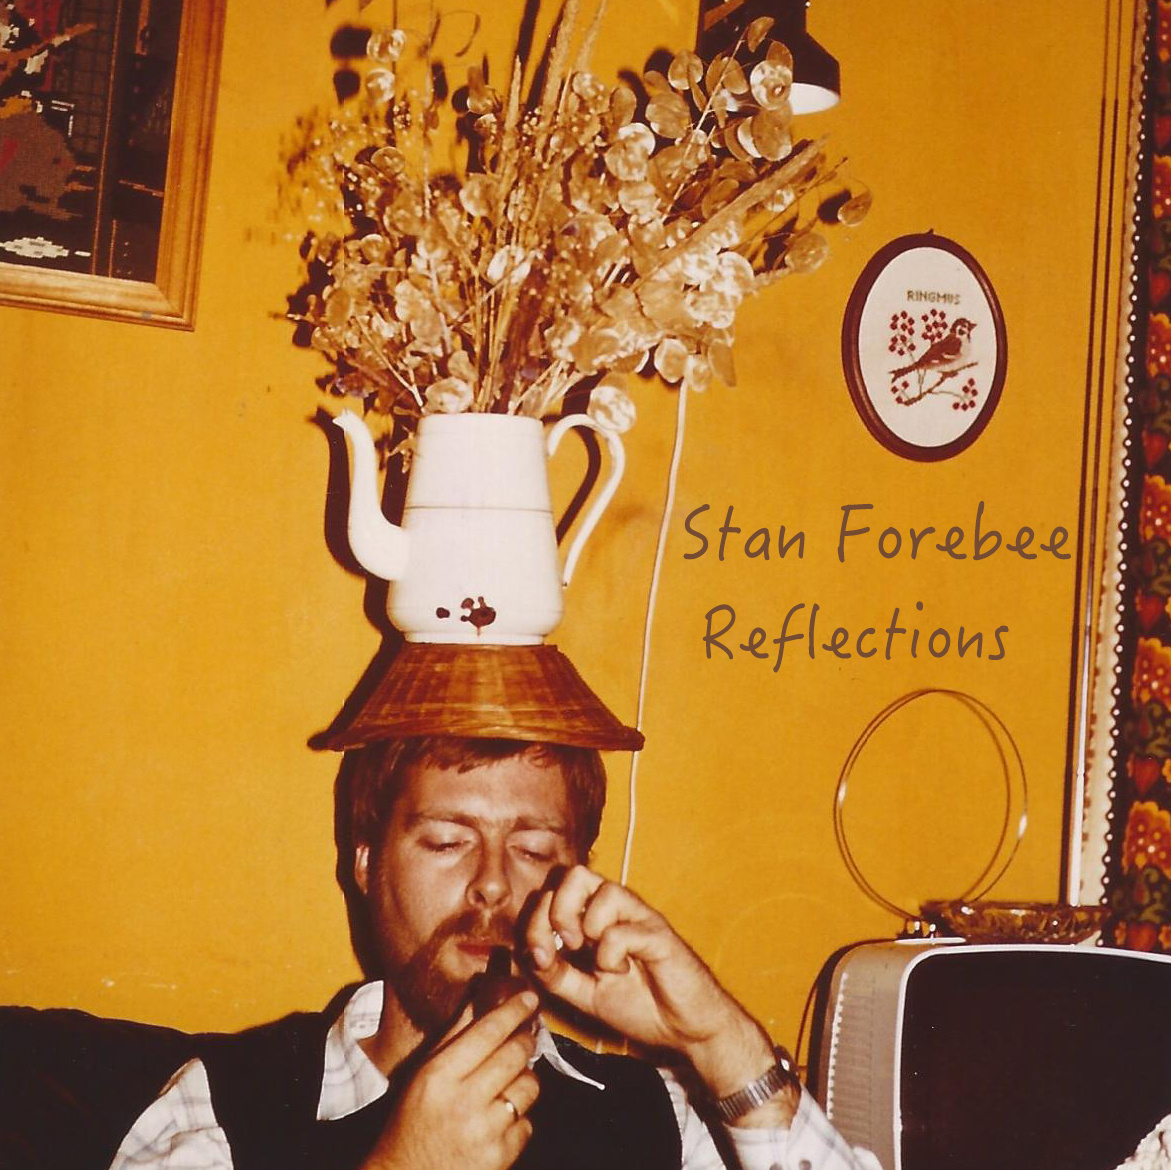 Listen: Stan Forebee – Reflections